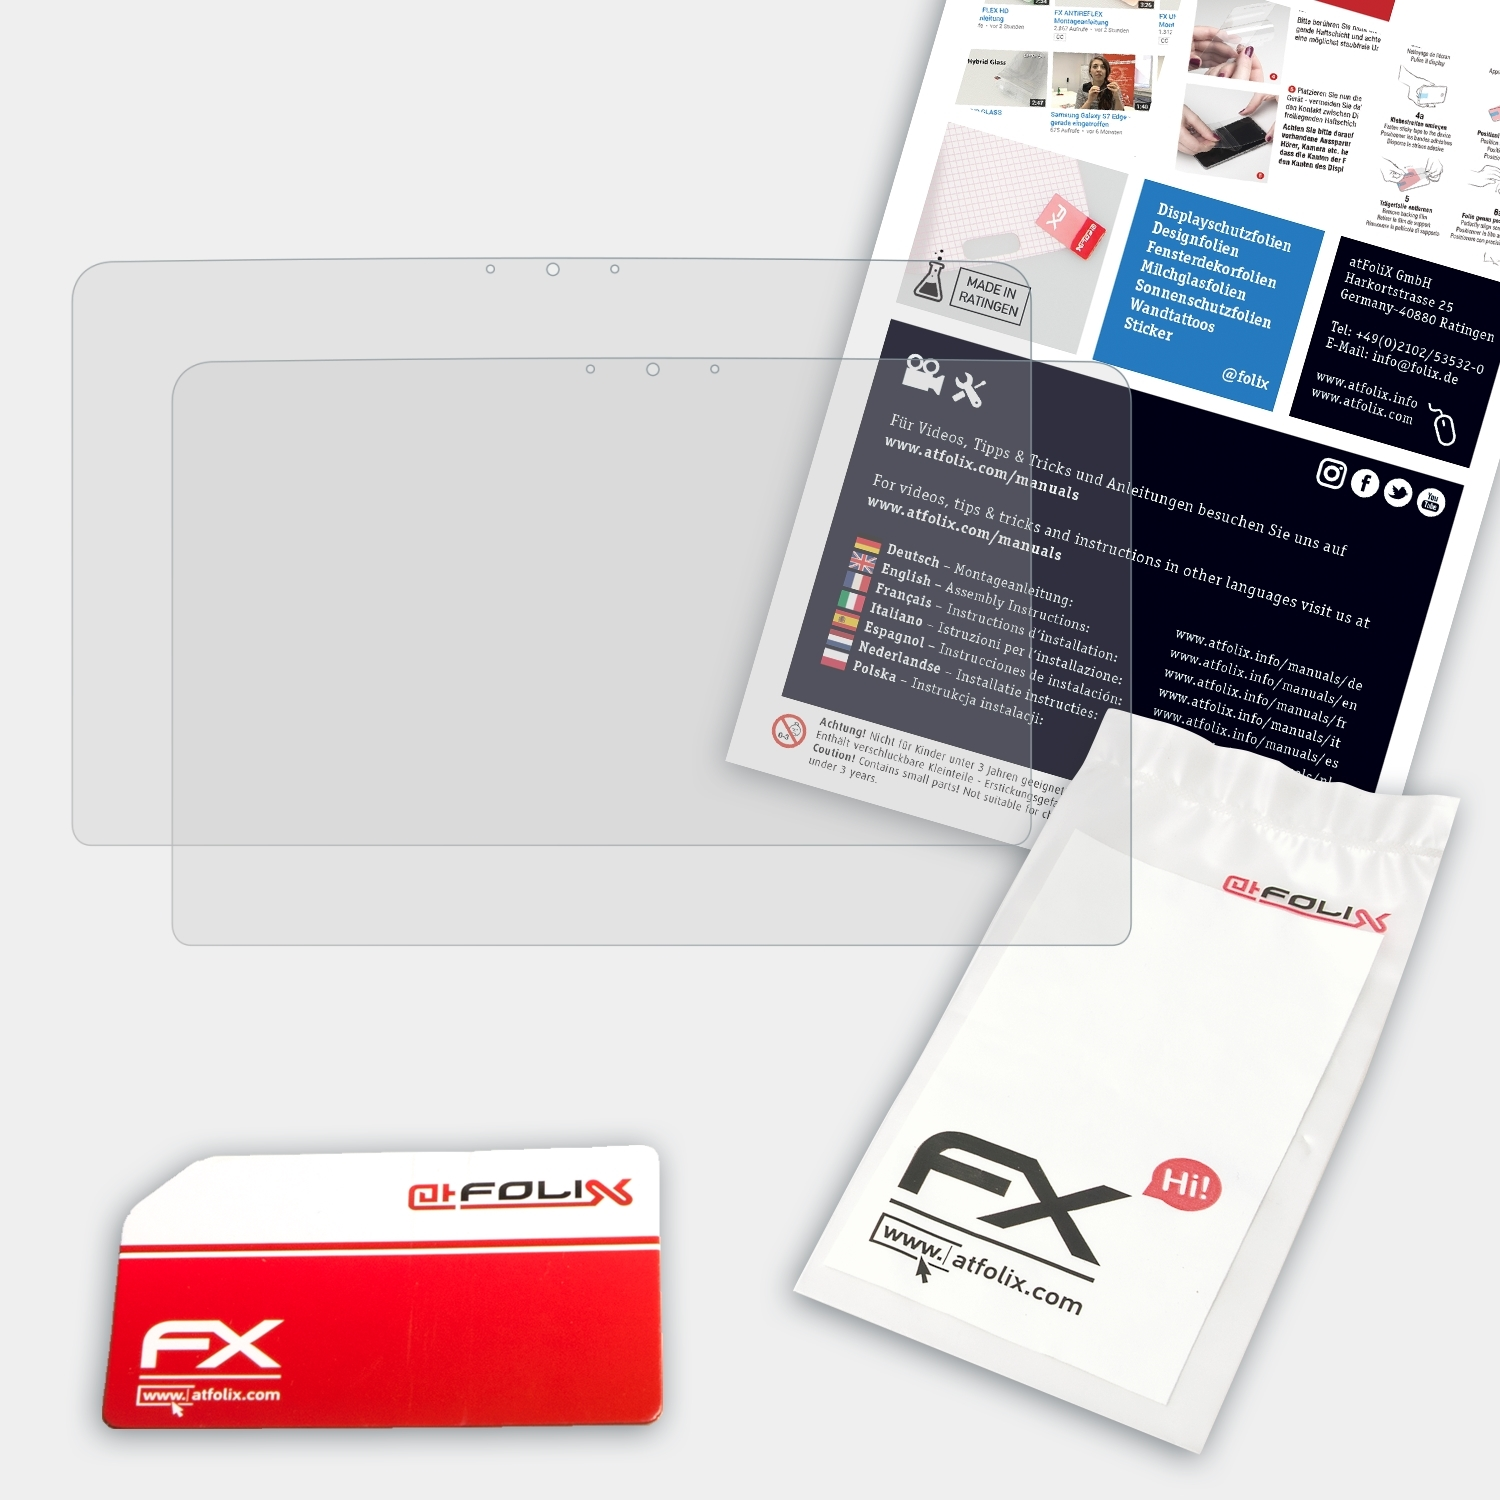 ATFOLIX 2x FX-Antireflex Displayschutz(für 13 XPS Dell 2012)) (L321X, Ultrabook Version